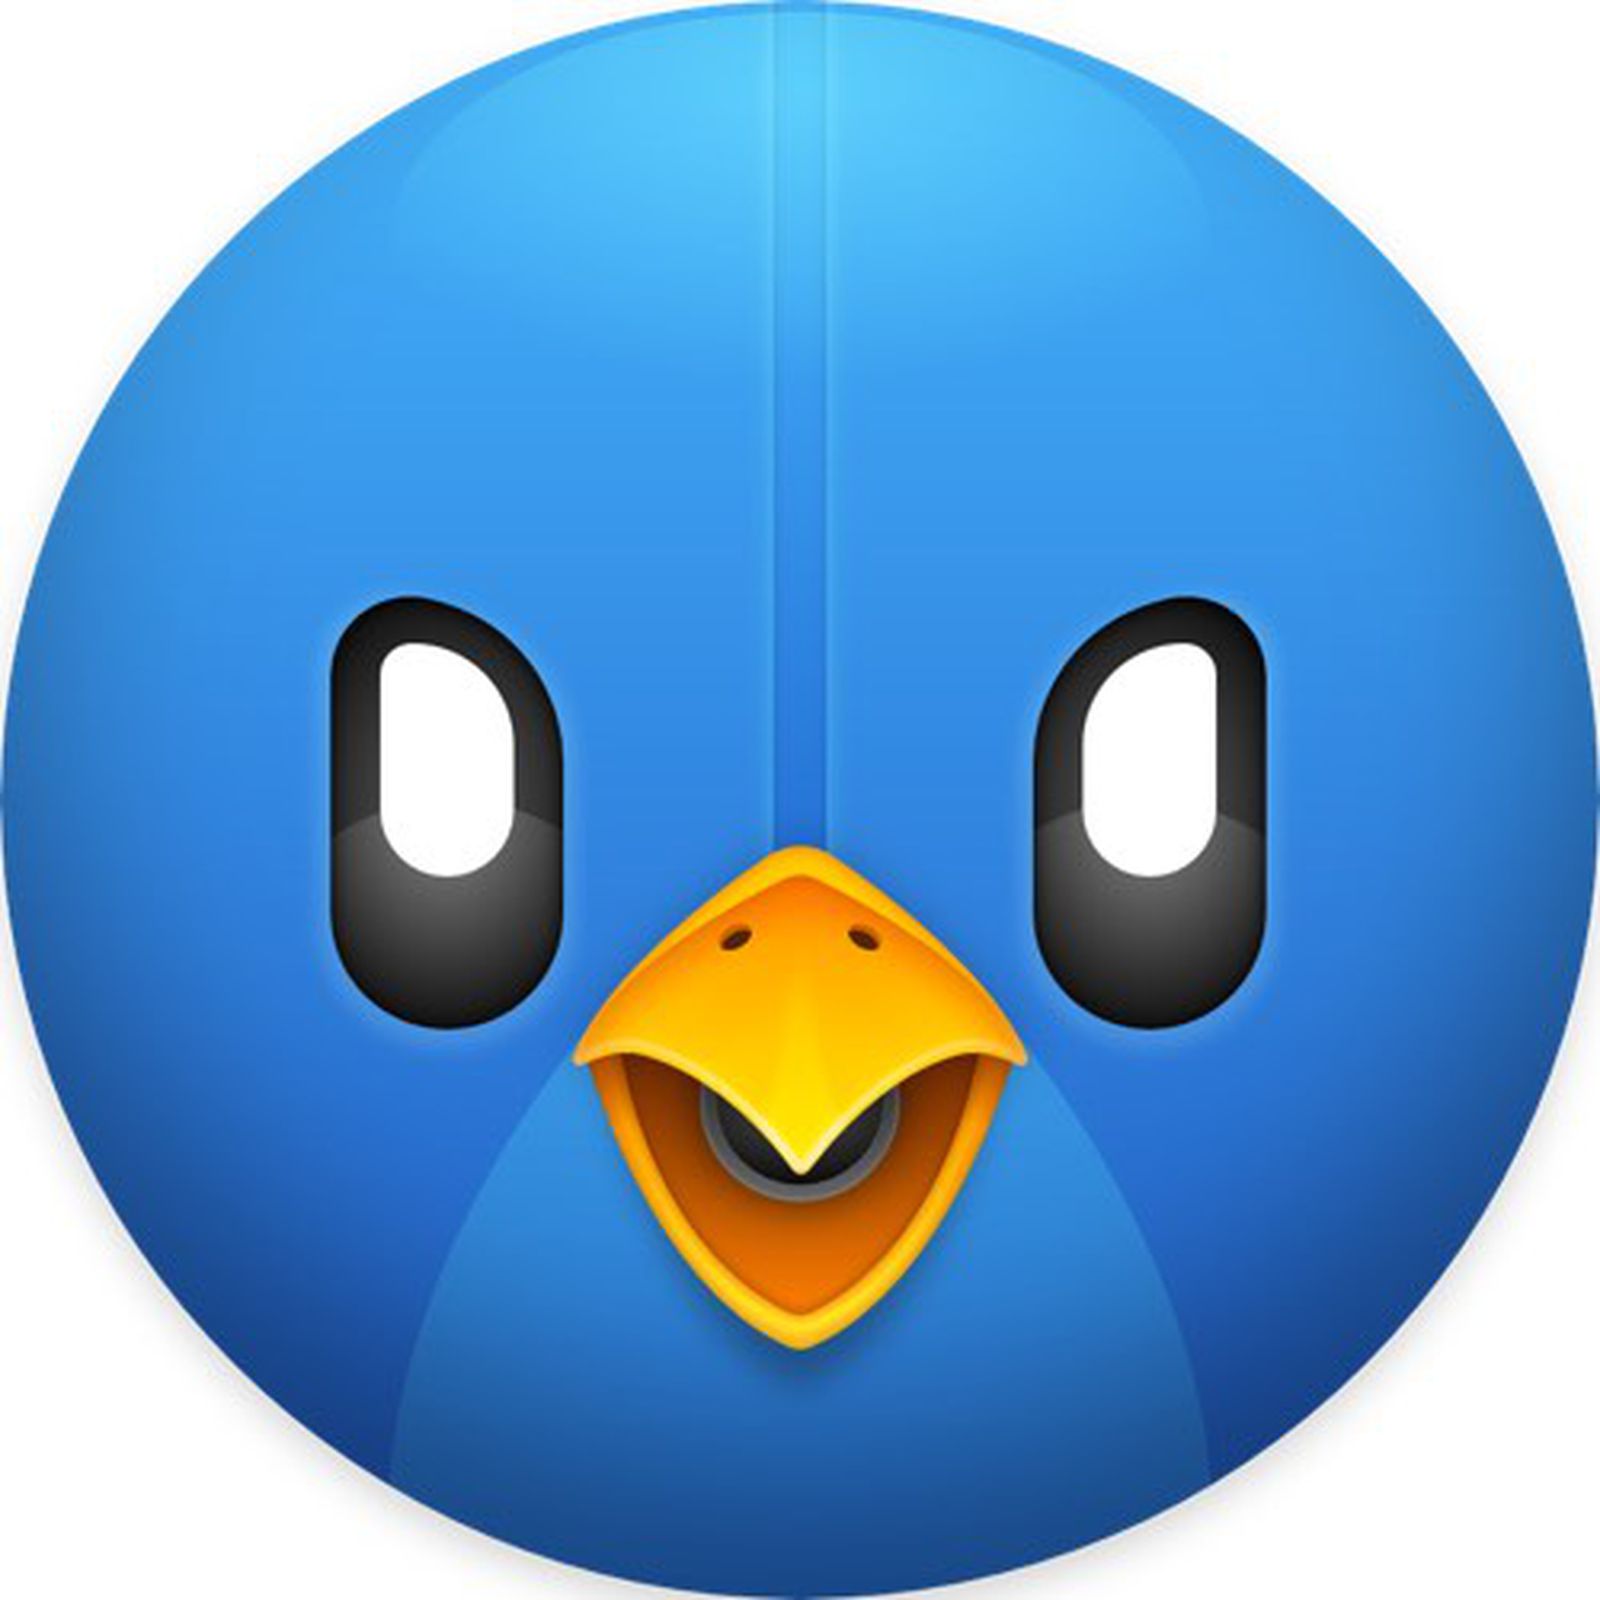 tweetbot for mac free